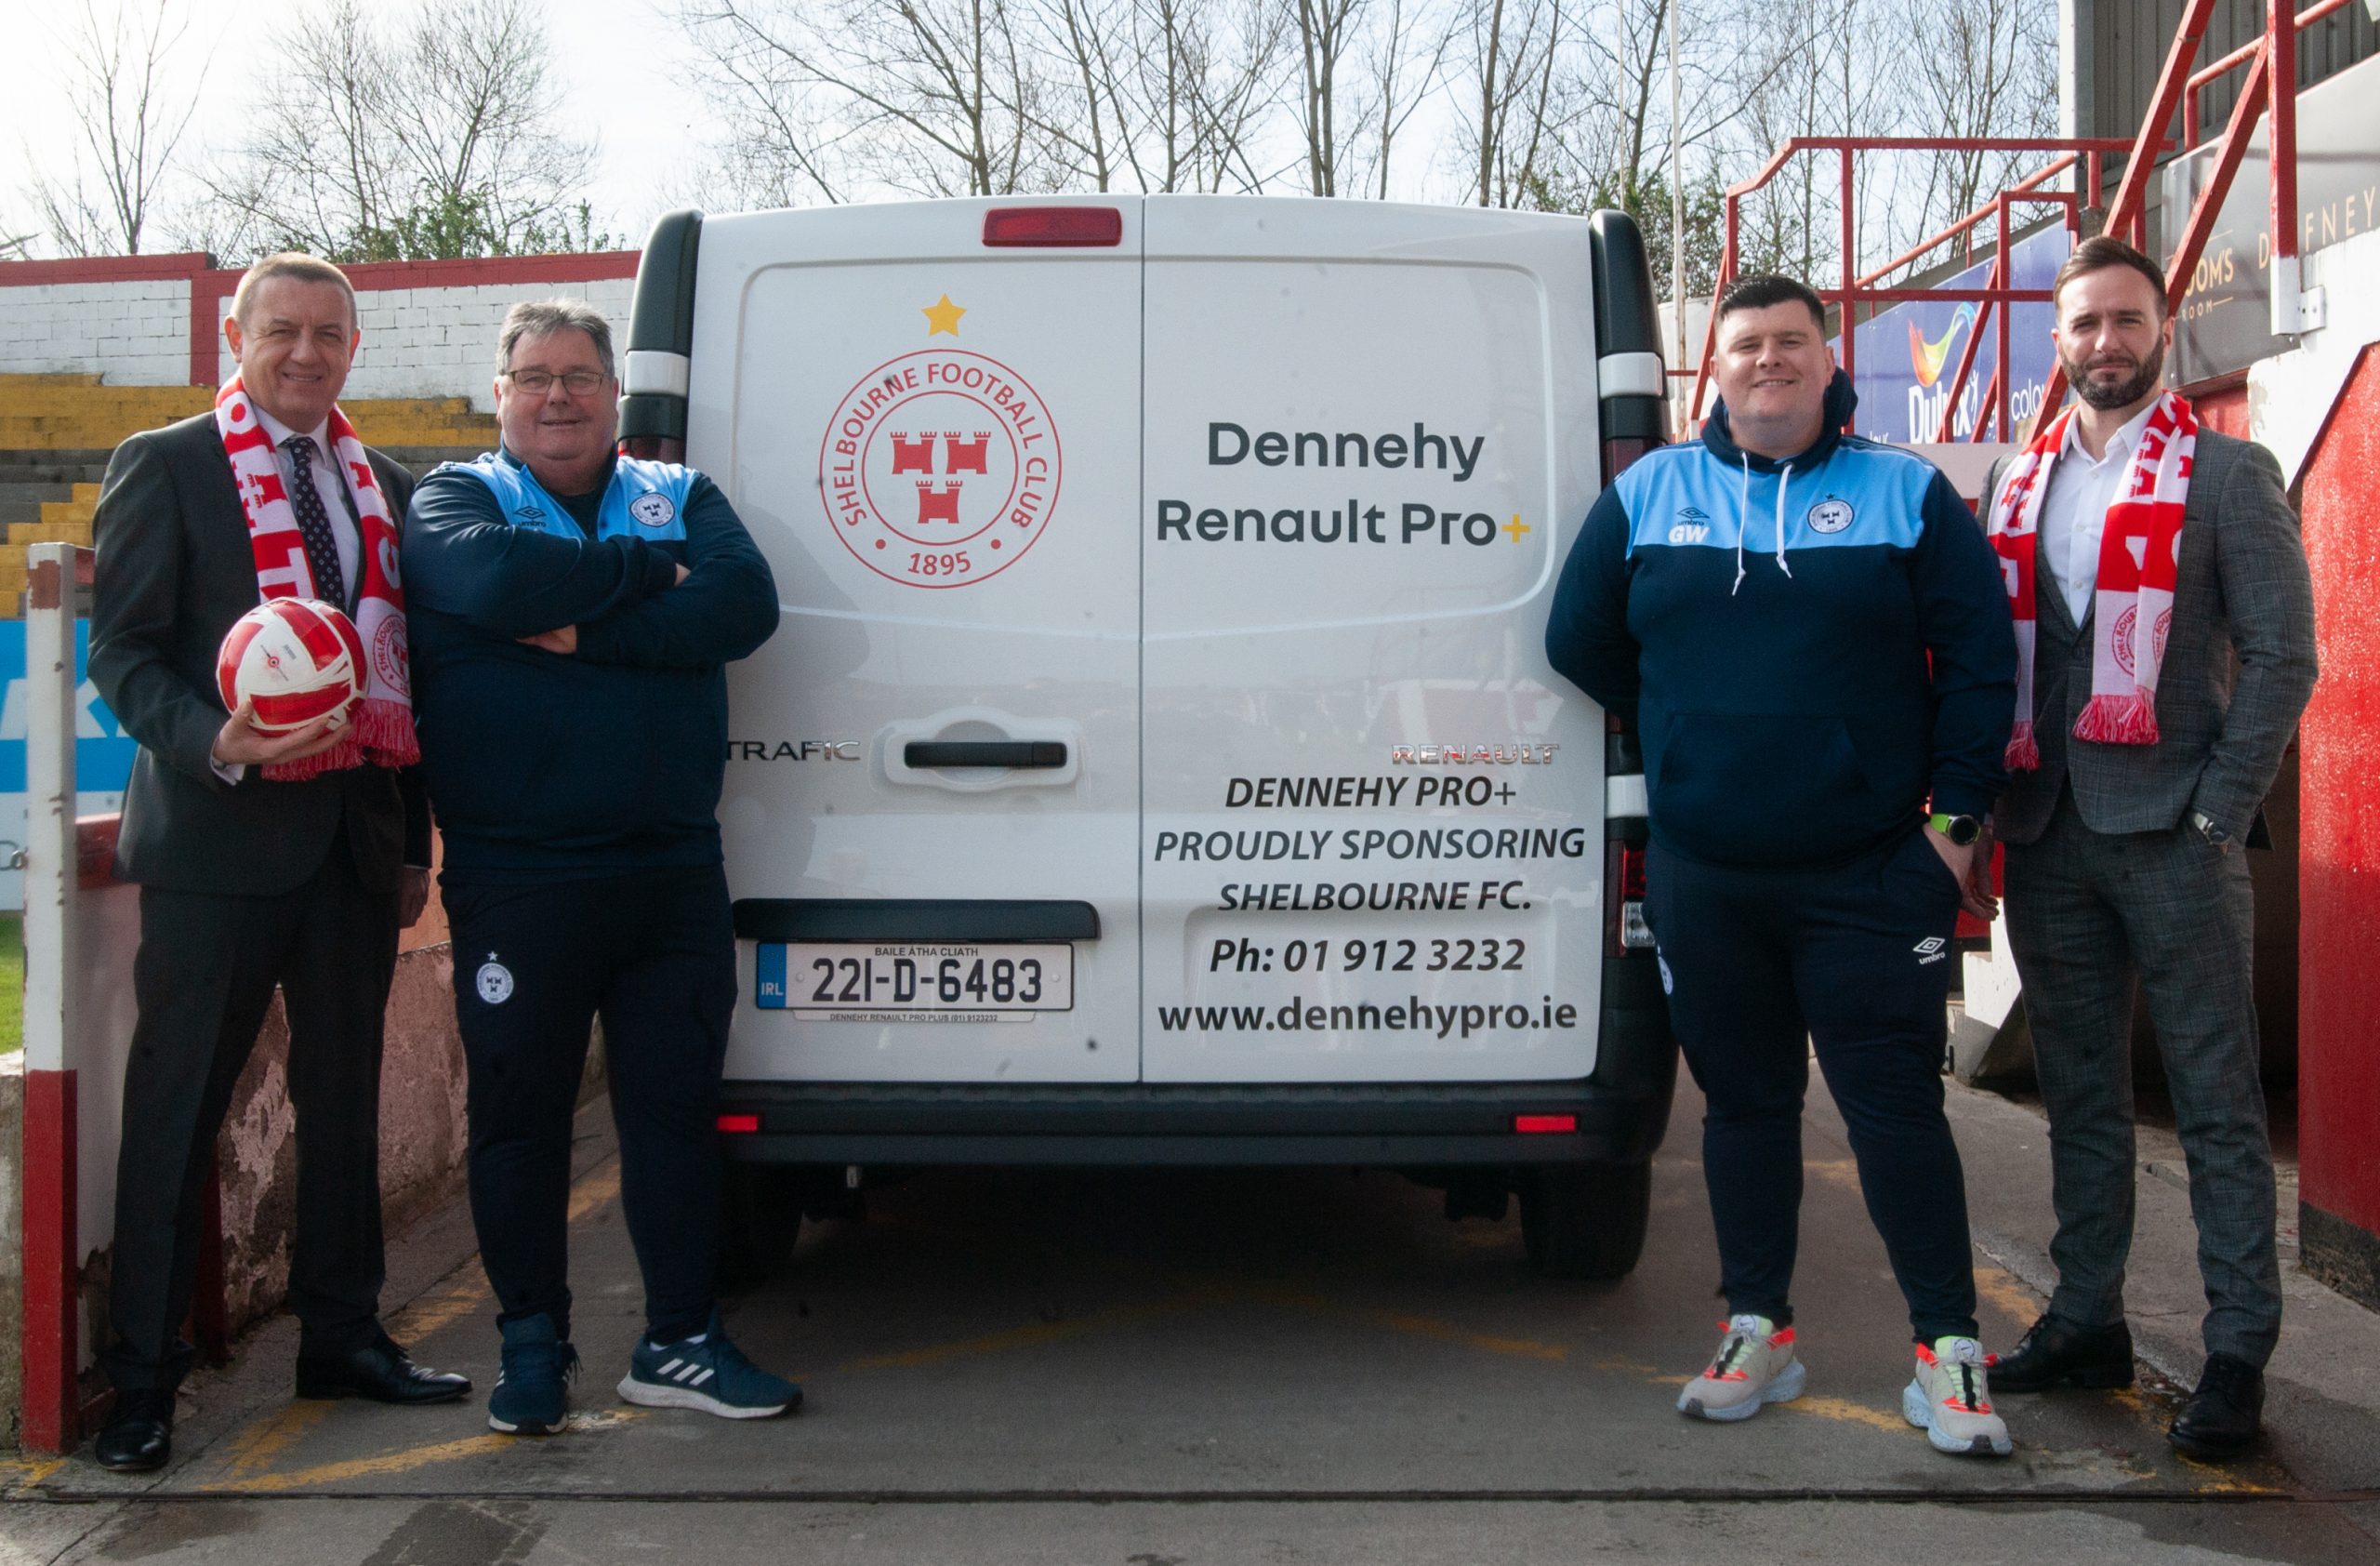 Shelbourne announces Renault Dennehy Pro+ partnership